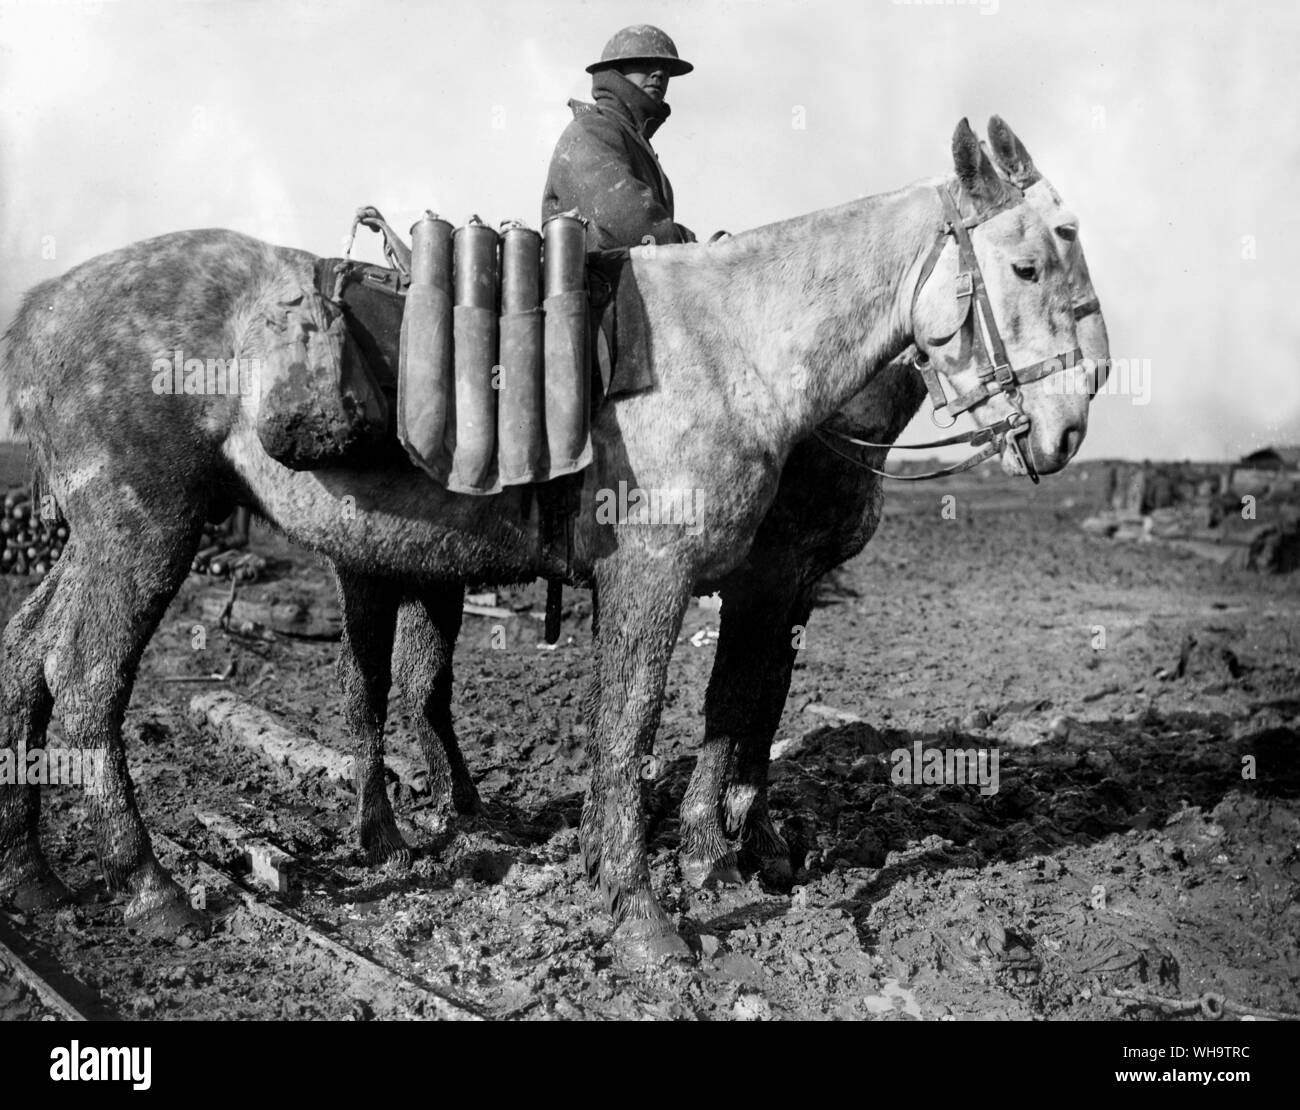 WW1/Frankreich: Field gun Munition in Leinwand Luftfahrtunternehmen auf Maultiere auf schlammigen Land. Guillemont, Oktober 1916. Stockfoto